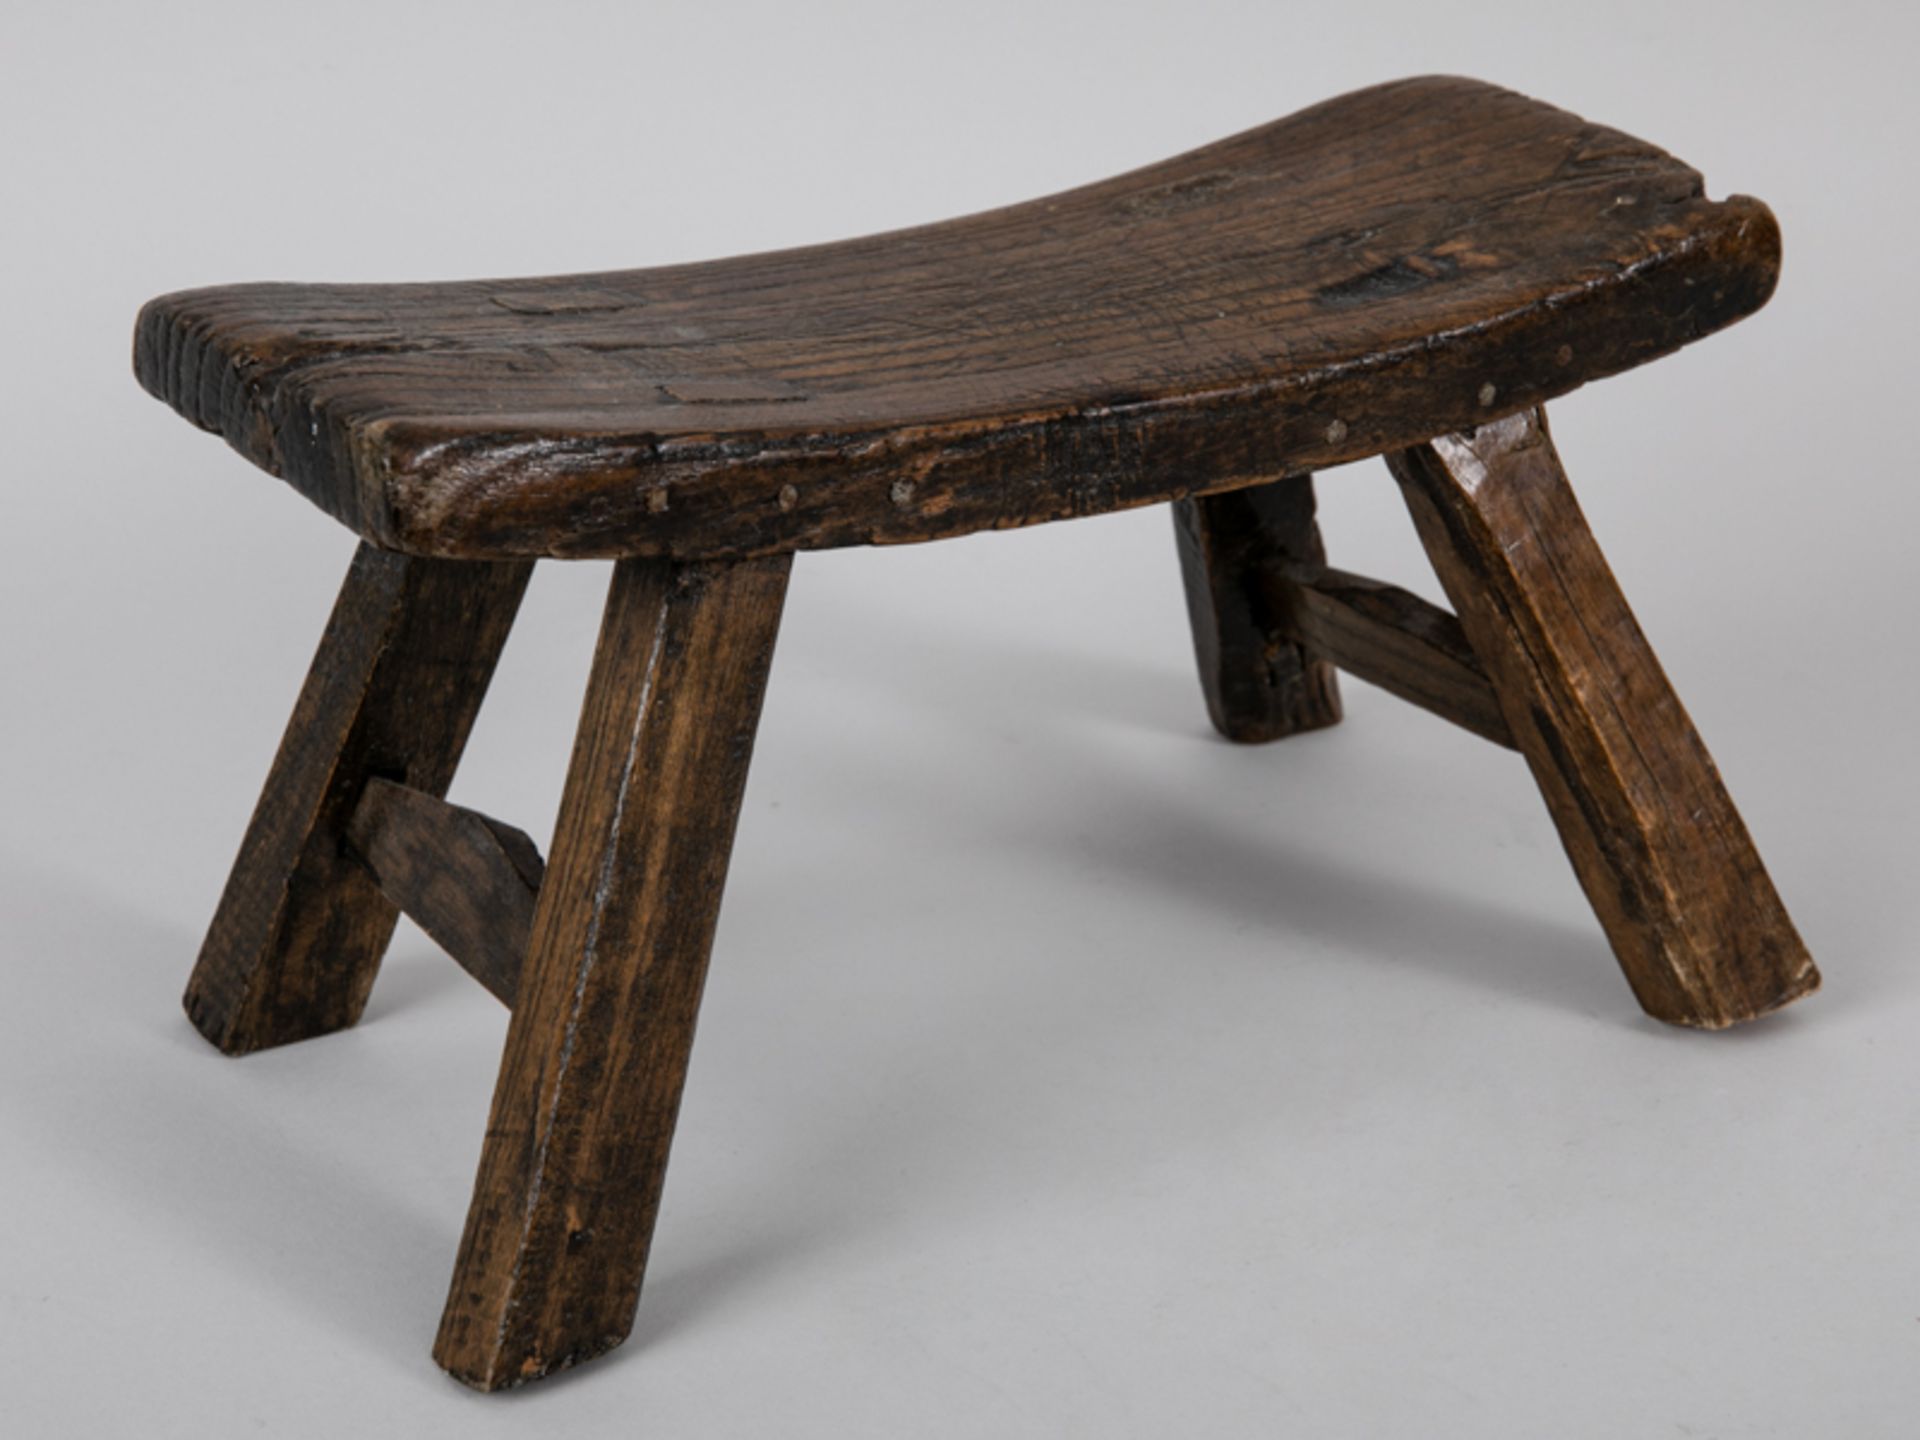 Holzstütze in Tischform, wohl asiatisch, 18./19. Jh. (teils ergänzt). Holz mit Alters- und Ge